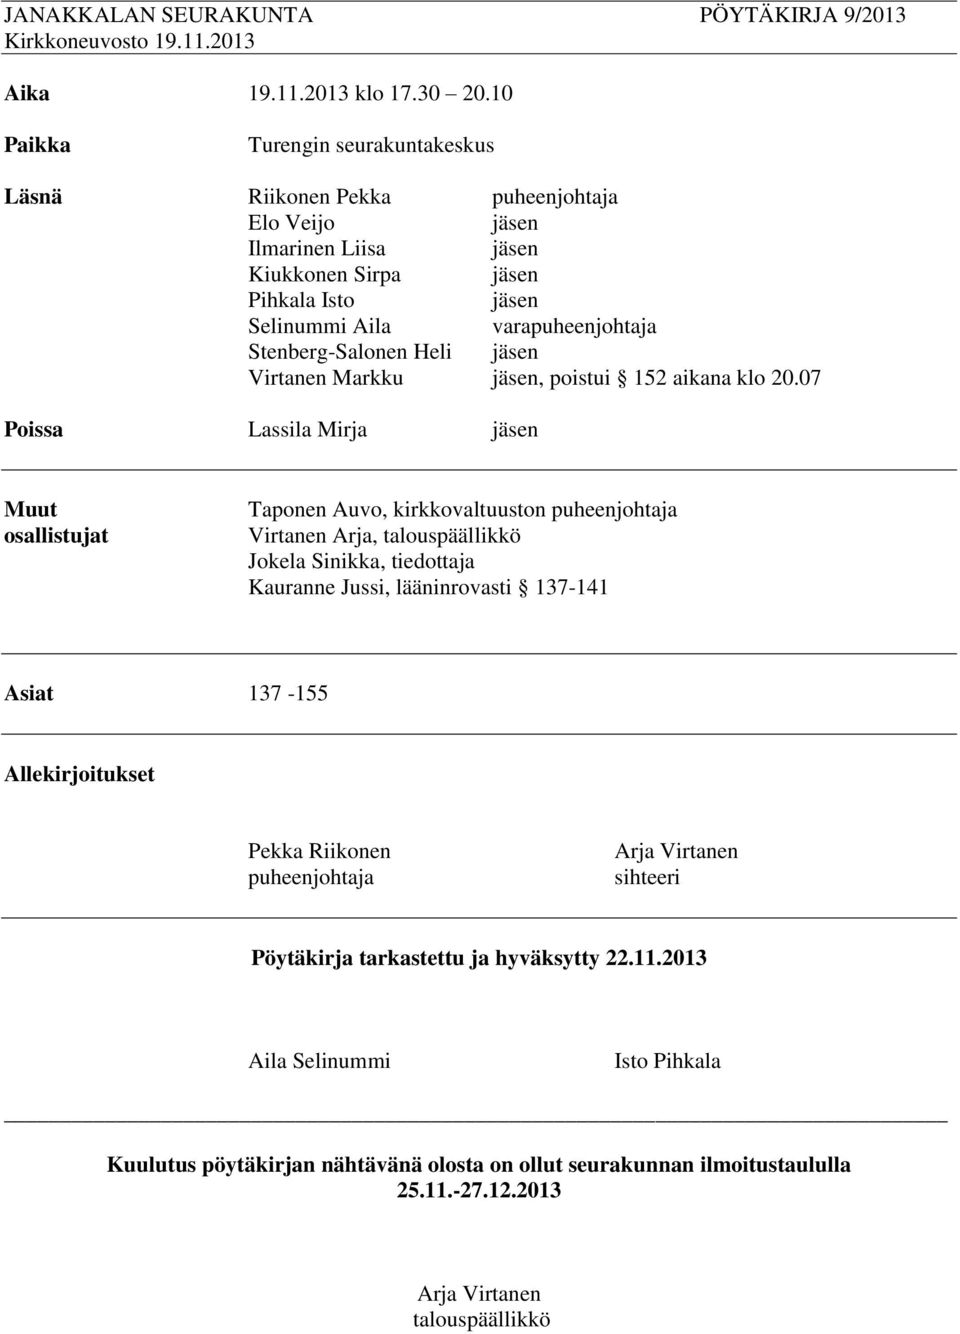 Stenberg-Salonen Heli jäsen Virtanen Markku jäsen, poistui 152 aikana klo 20.